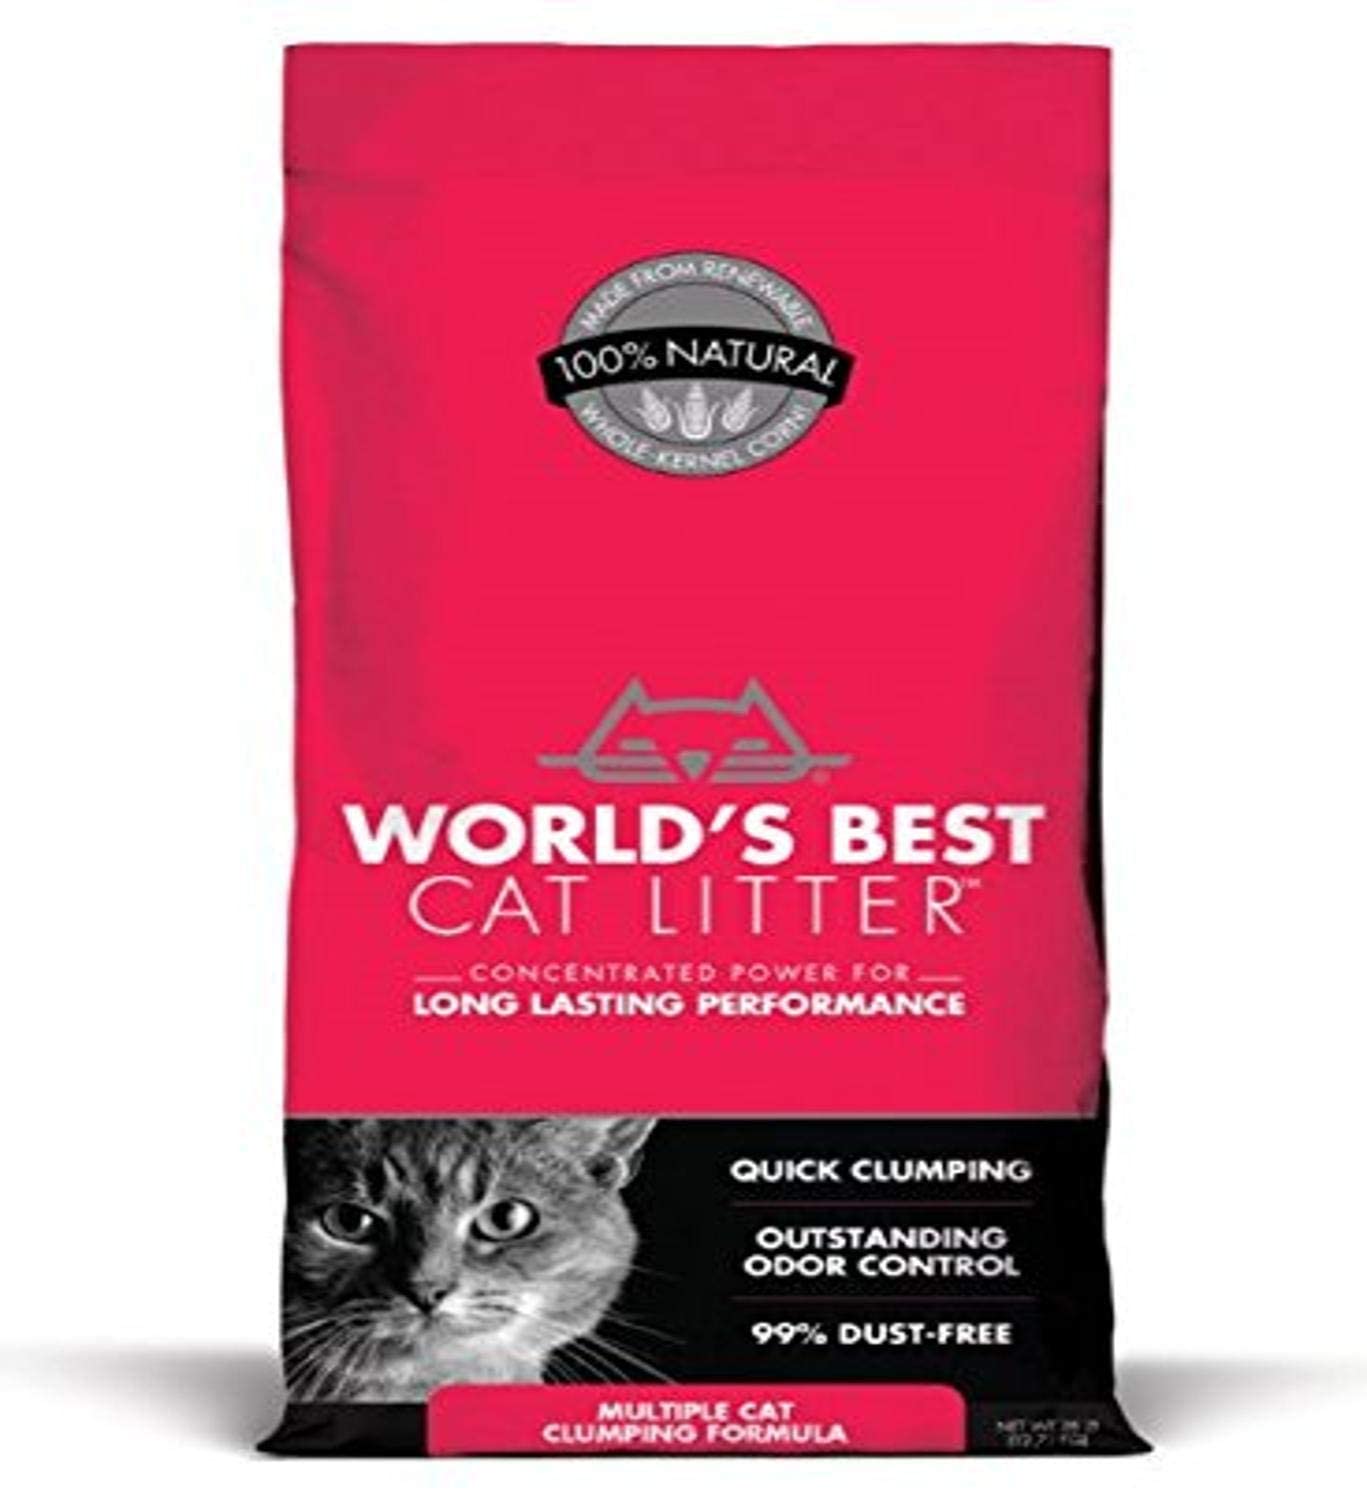 Best Dust Free Cat Litter To Buy in 2021